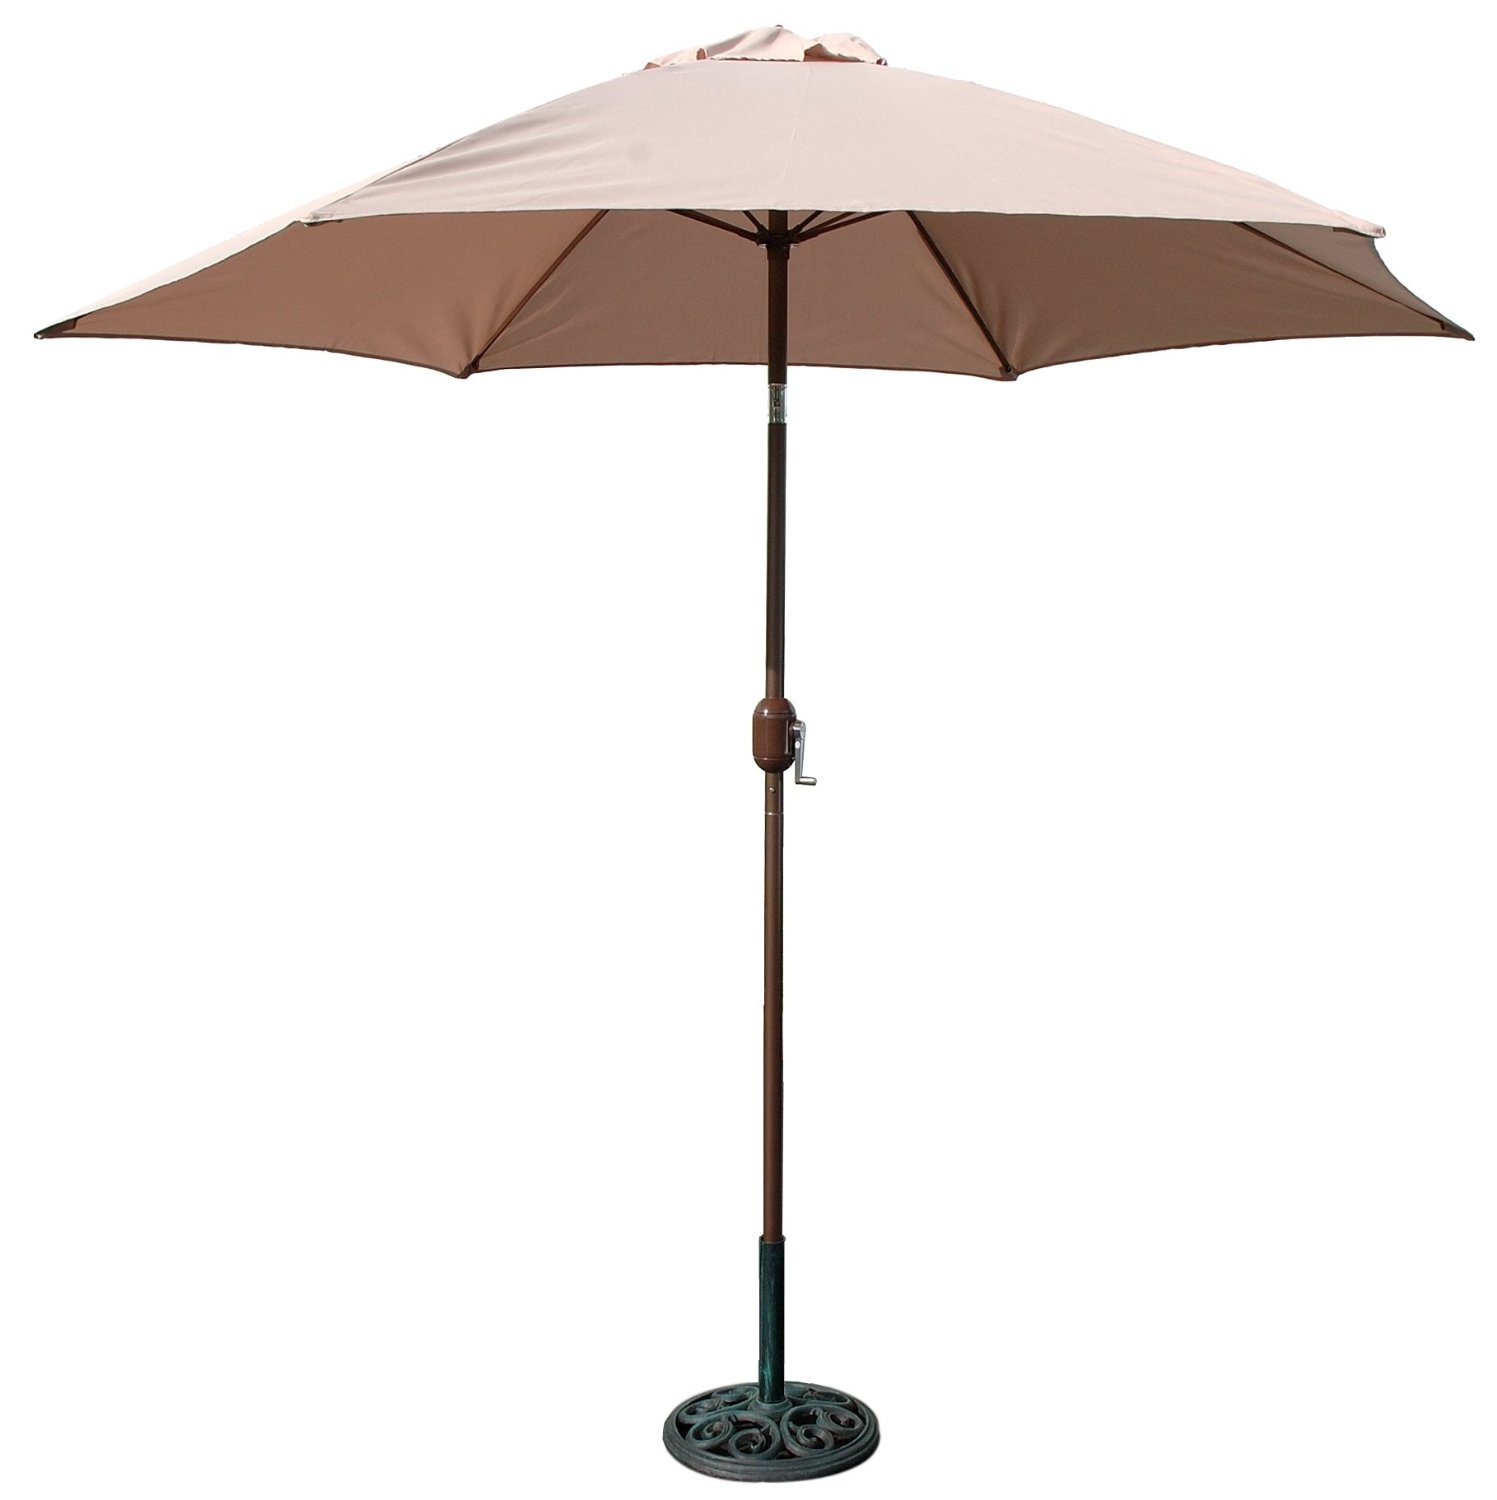 Umbrellas - Umbrellas, Canopies & Shade: Patio, Lawn ...